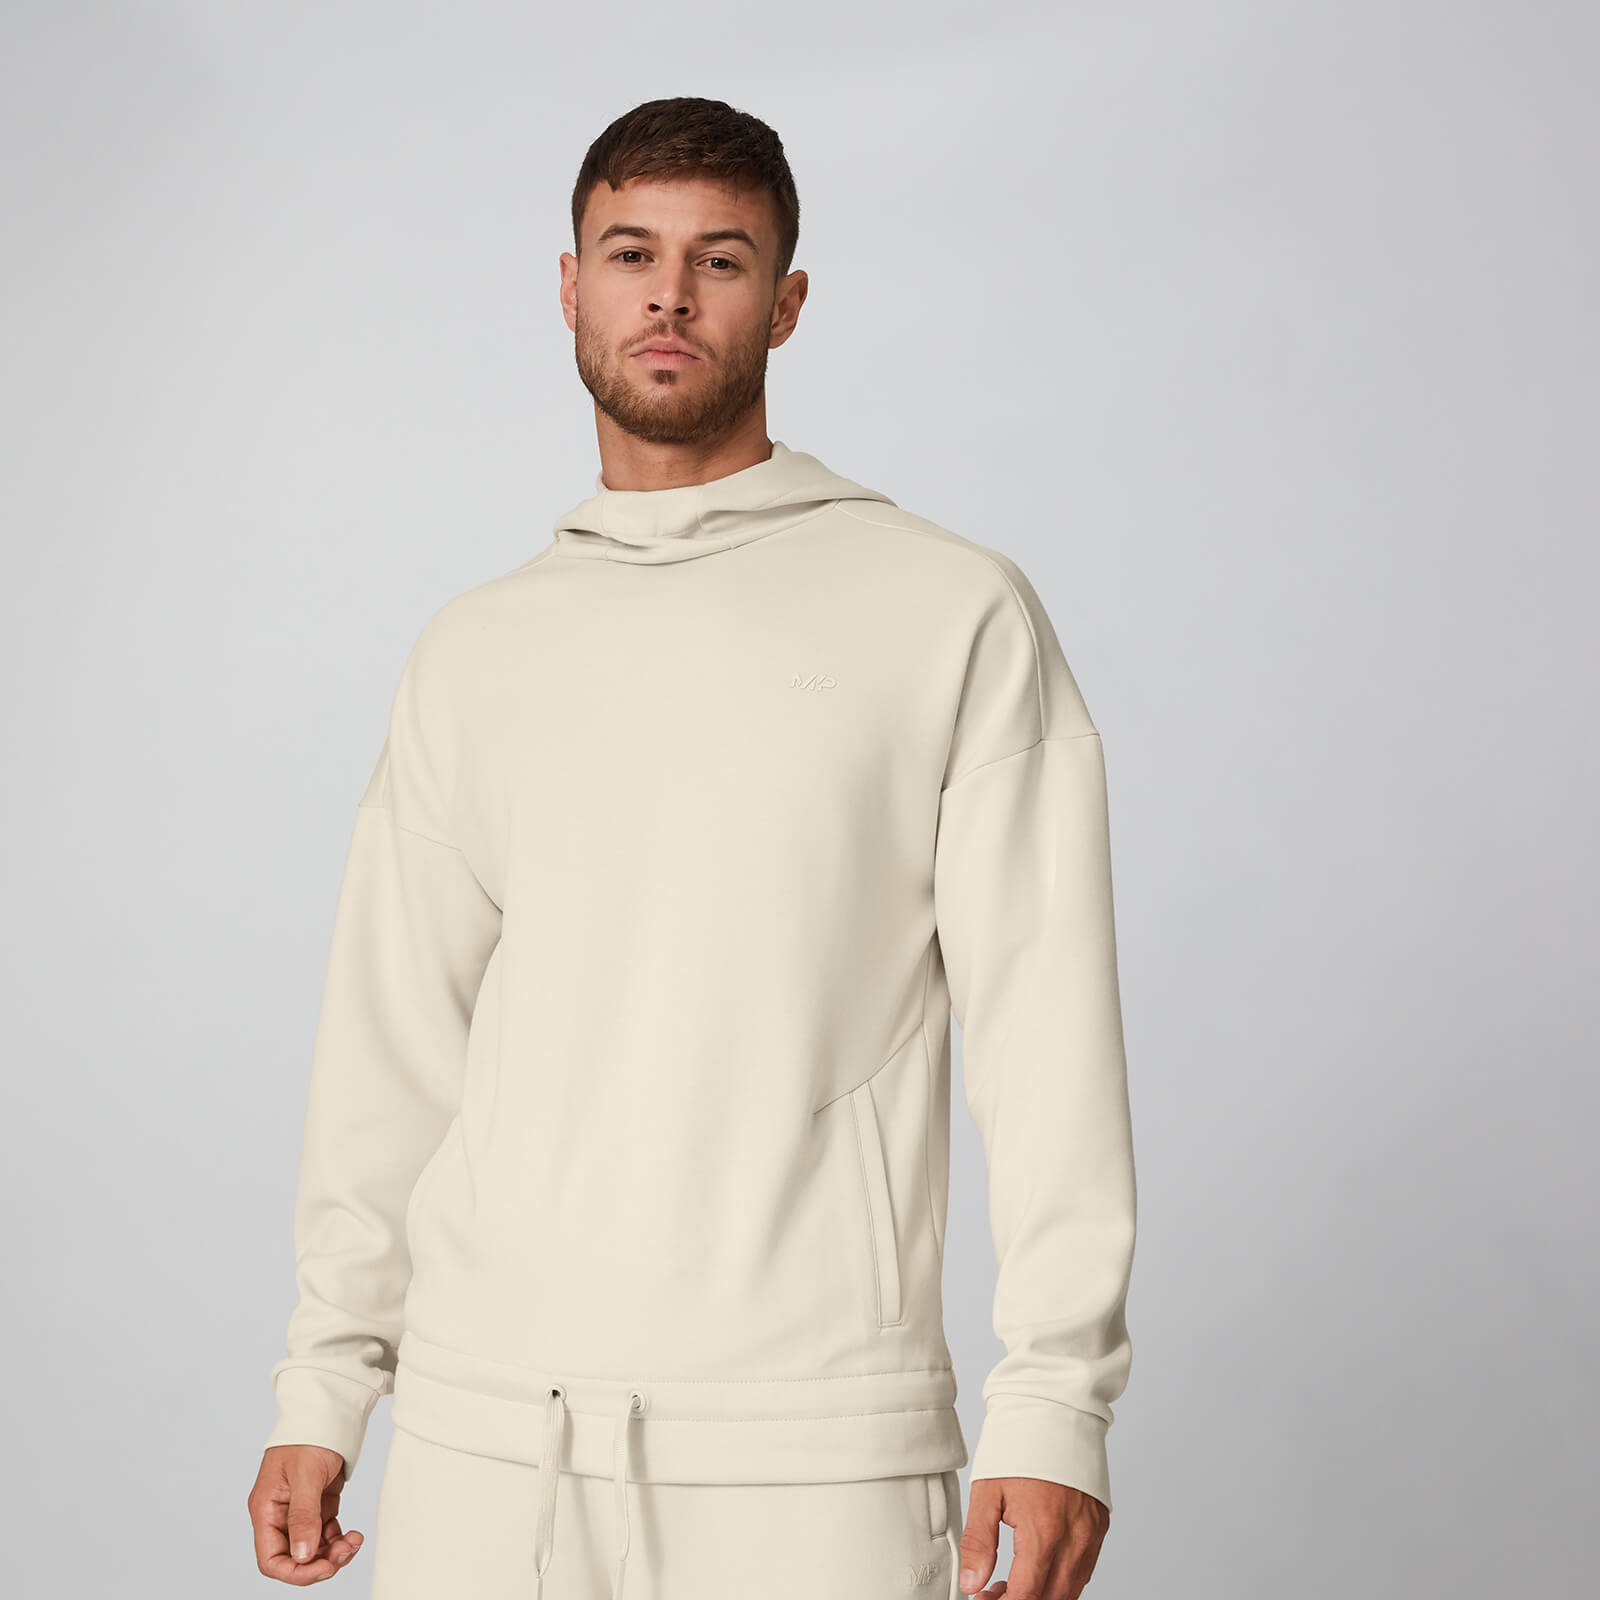 Form Pro Pullover majica s kapuljačom - Boja breskve - XS